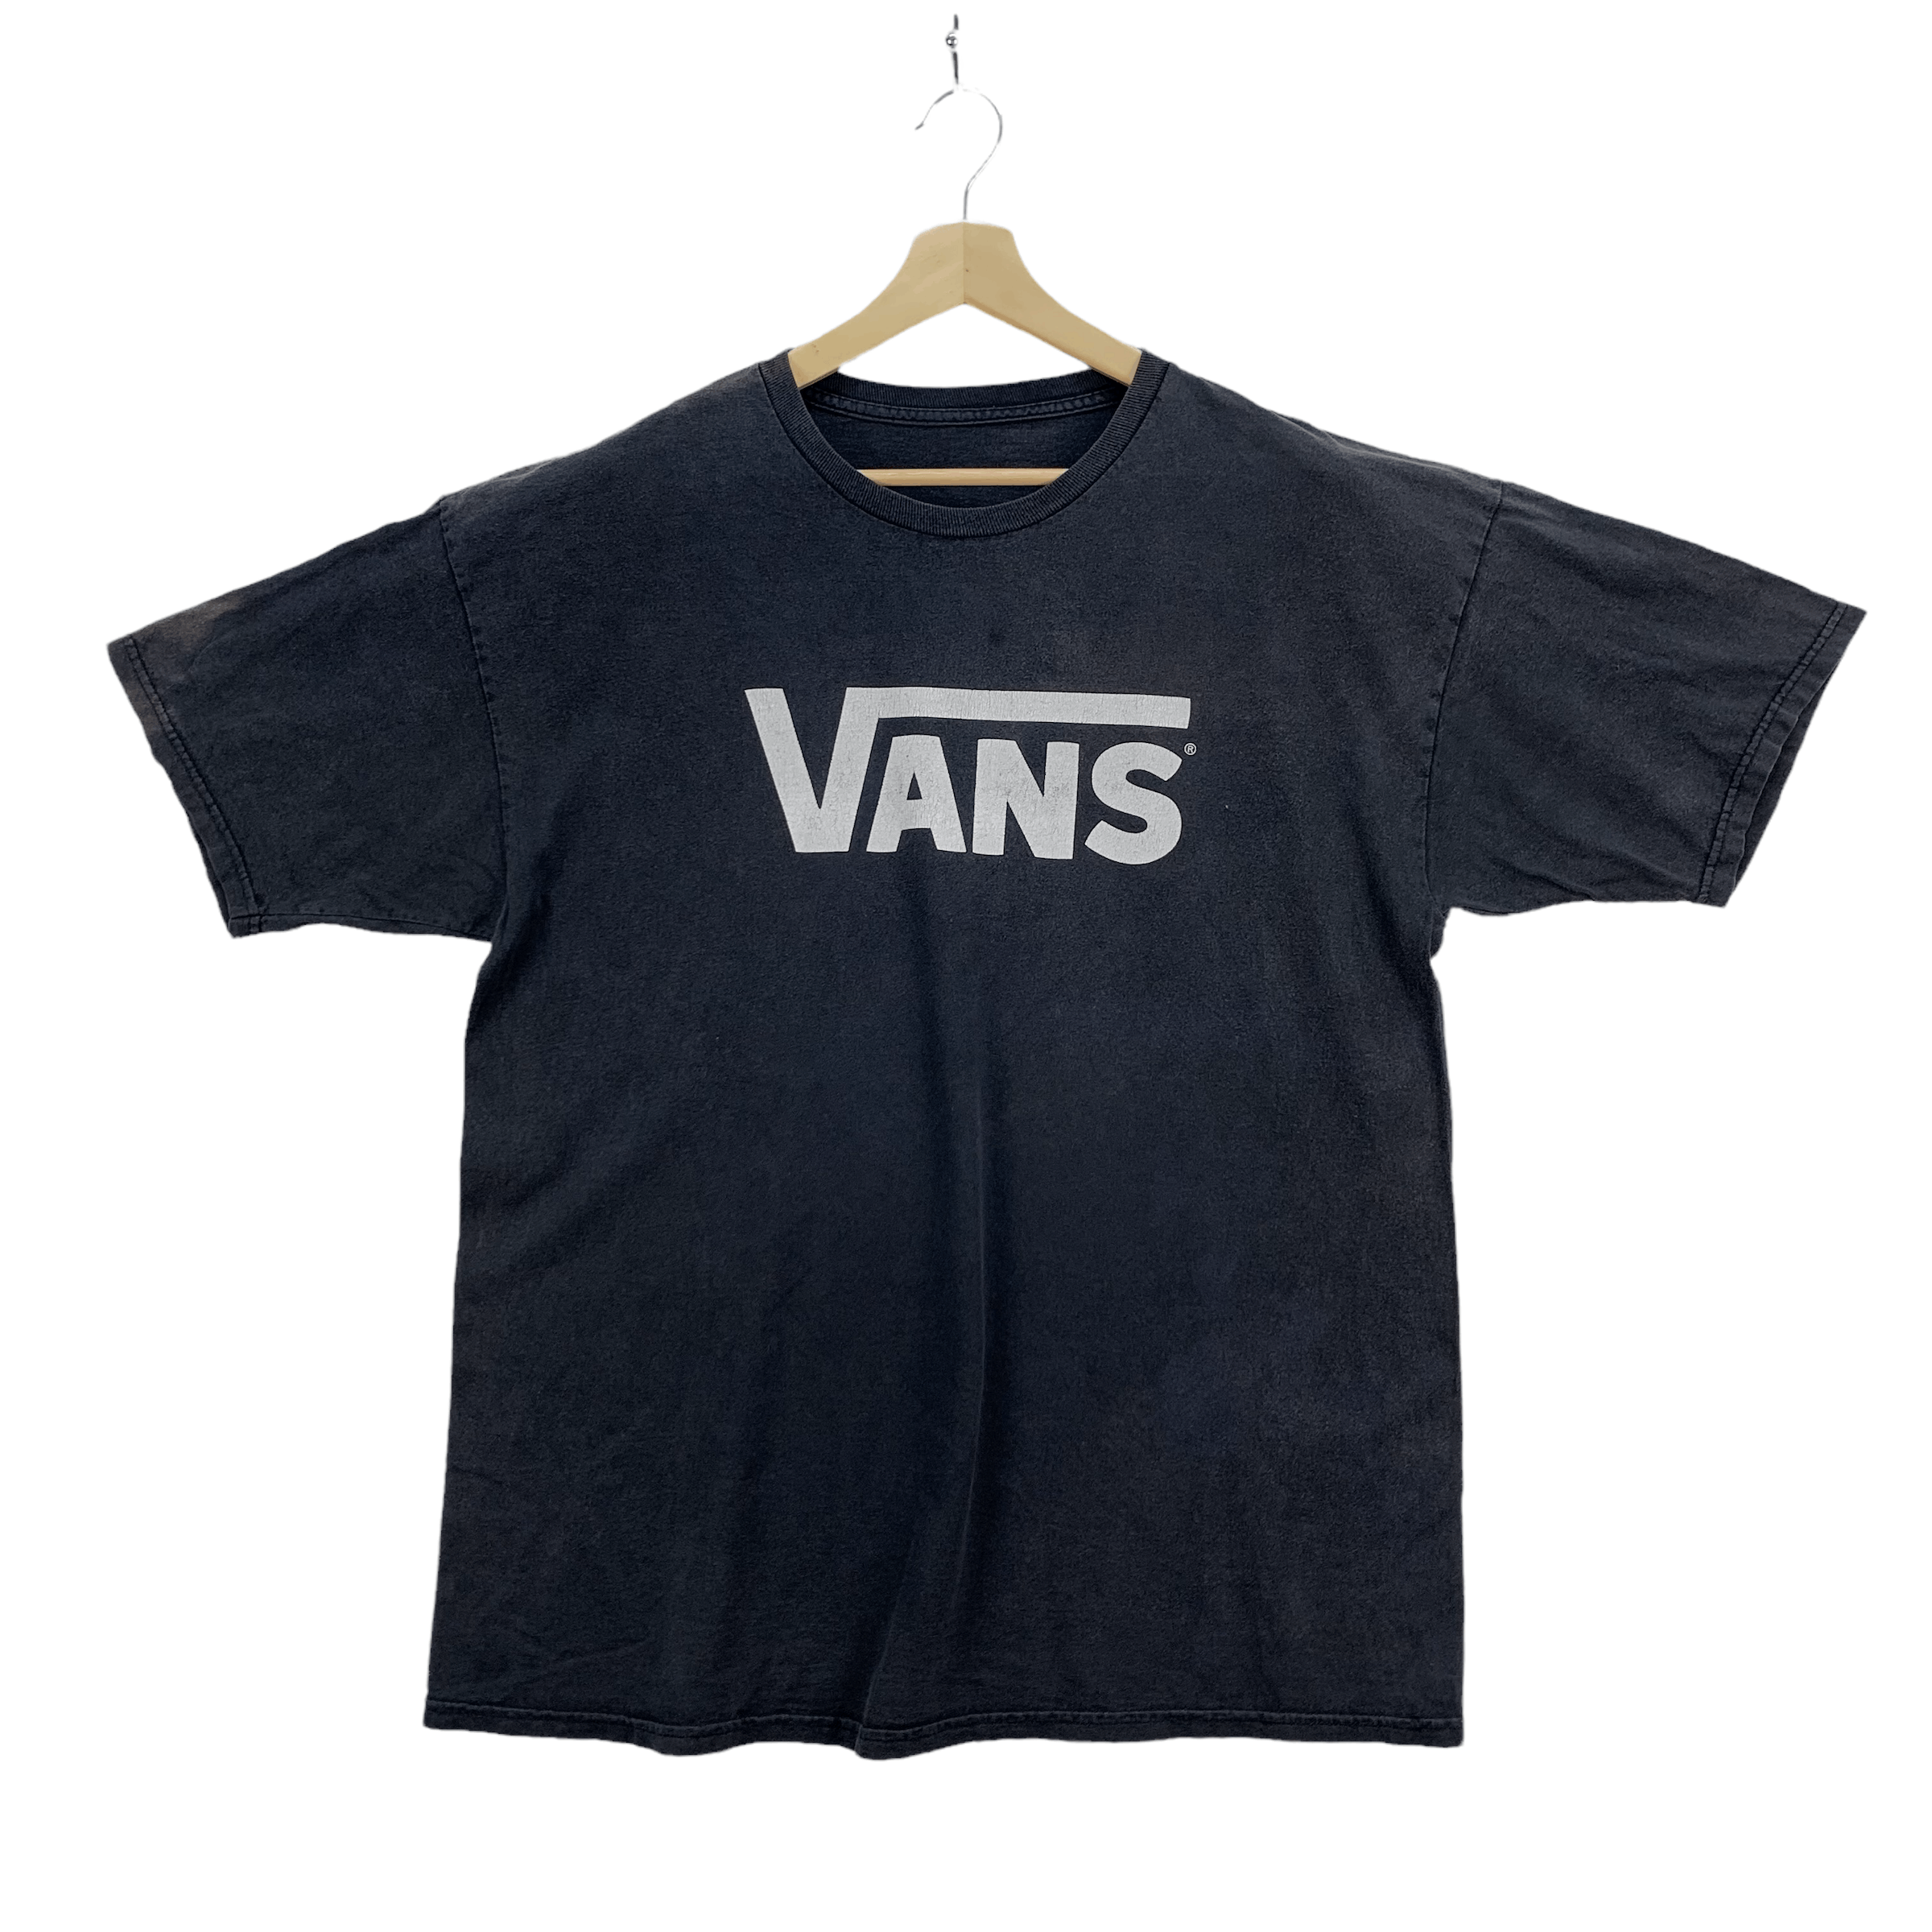 Vans Big Logo T Shirts #3821-132 - 1